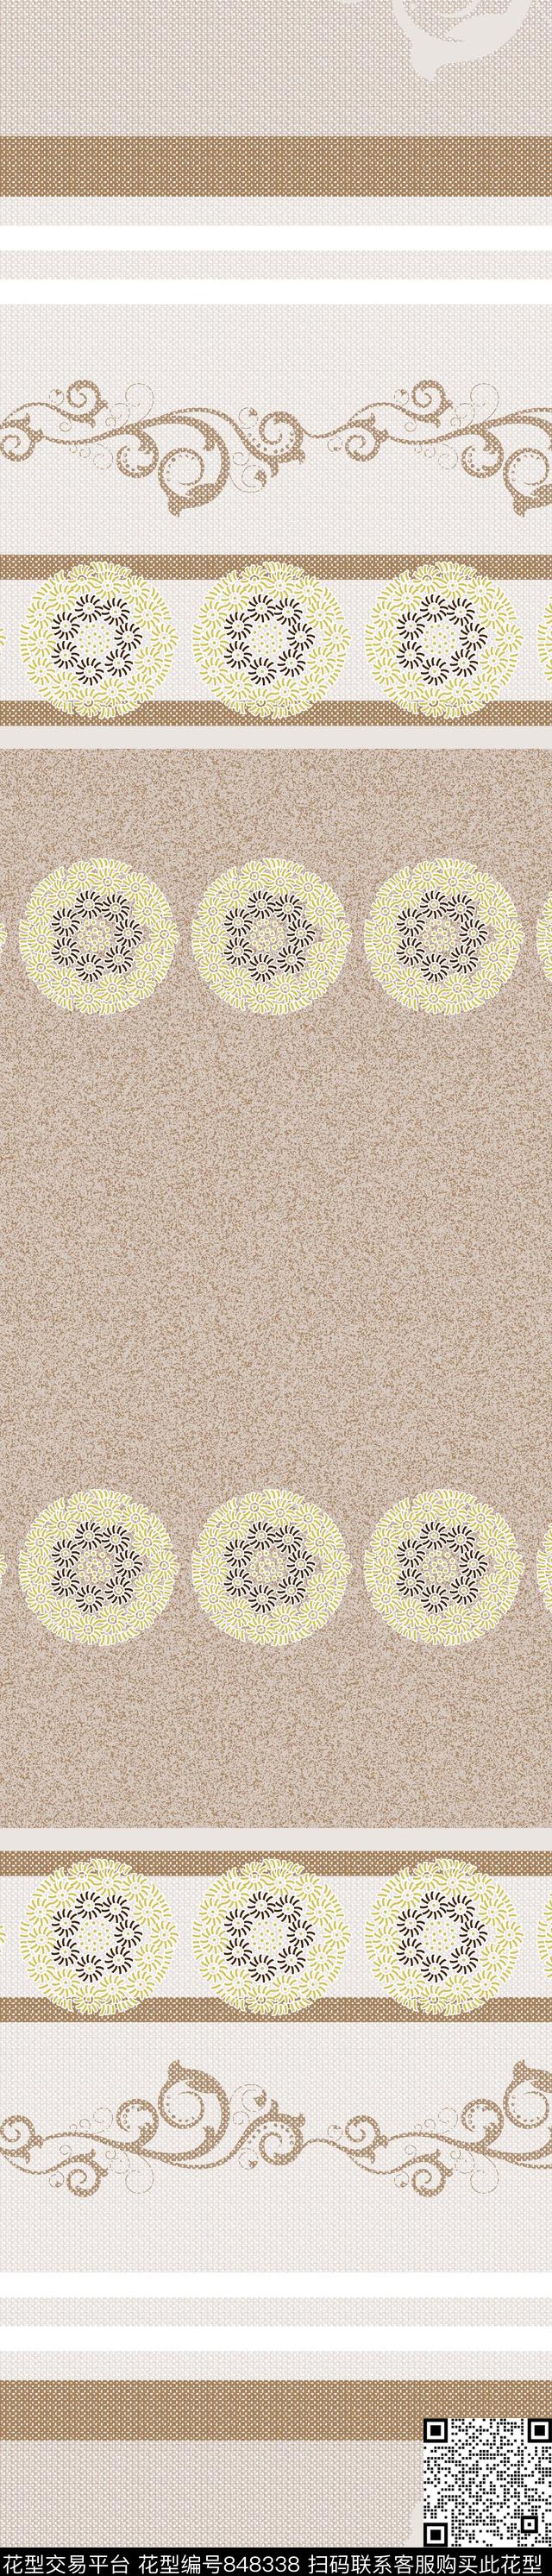 YJH170509e.jpg - 848338 - 花朵 抽象 窗帘 - 传统印花花型 － 窗帘花型设计 － 瓦栏